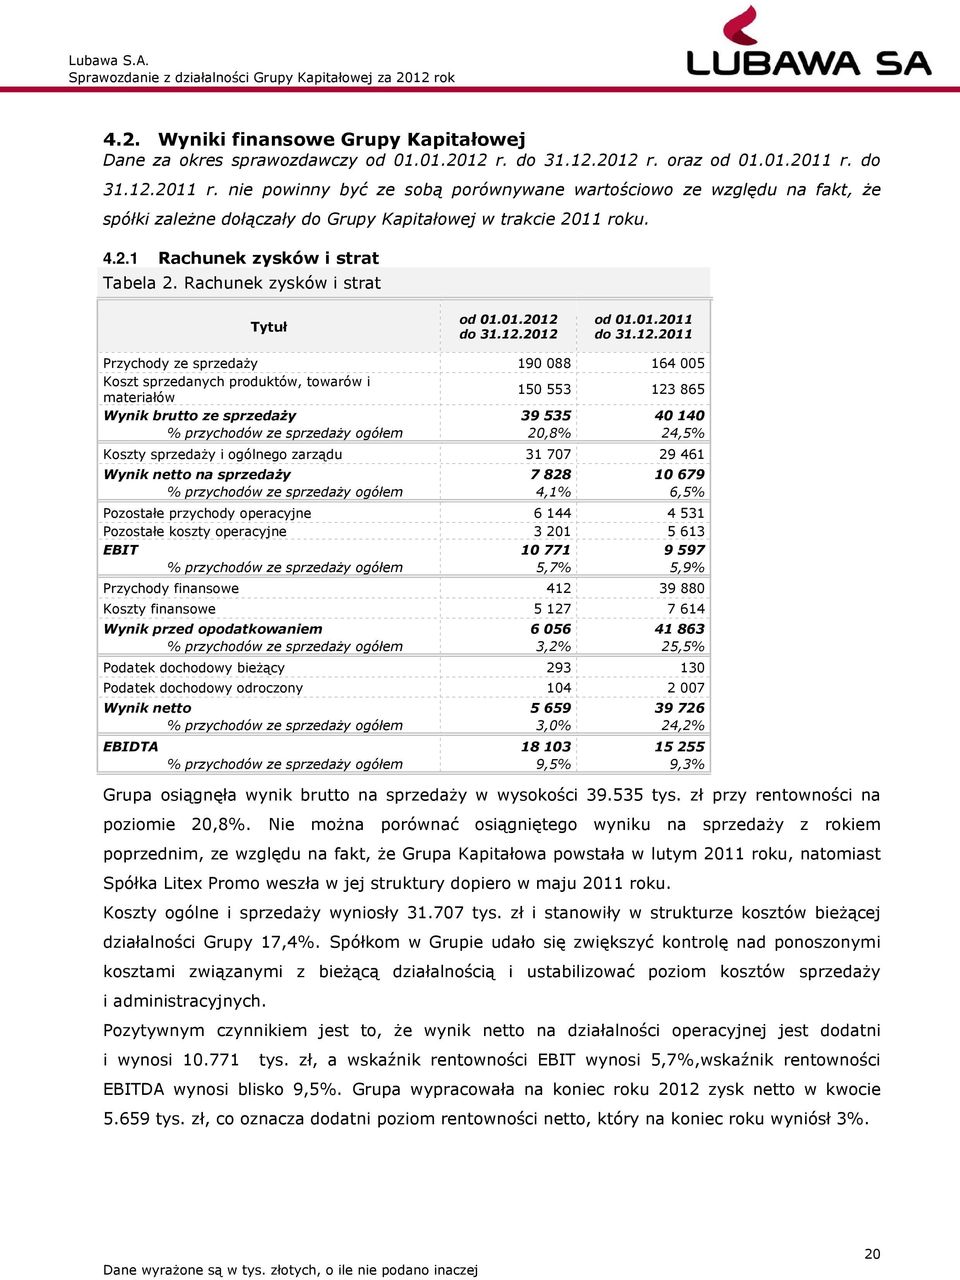 Rachunek zysków i strat Tytuł od 01.01.2012 